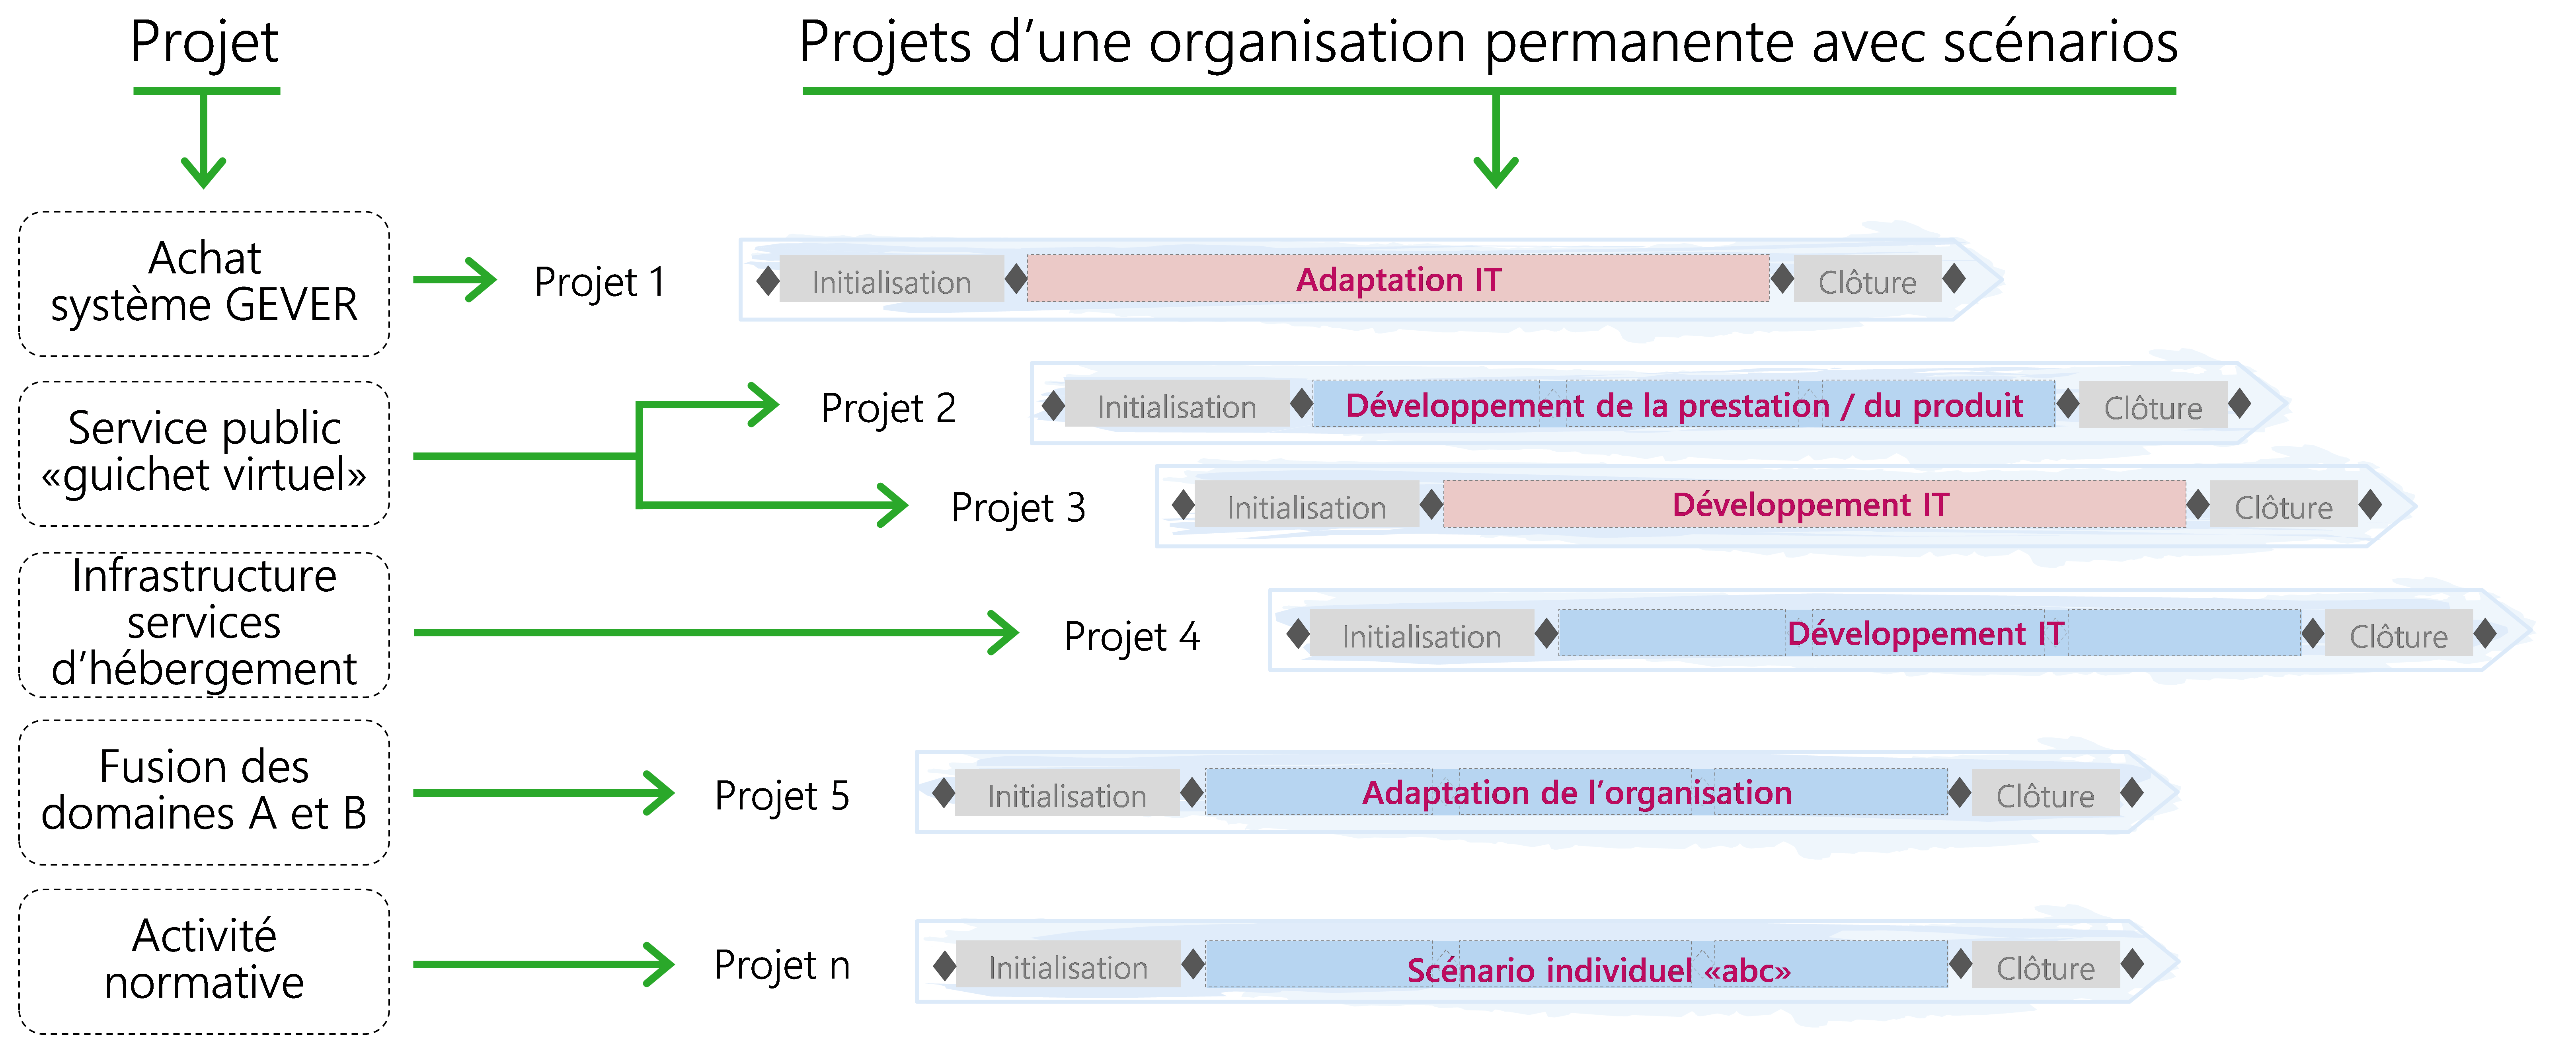 Figure 6 Projets d'une organisation permanente et scénarios